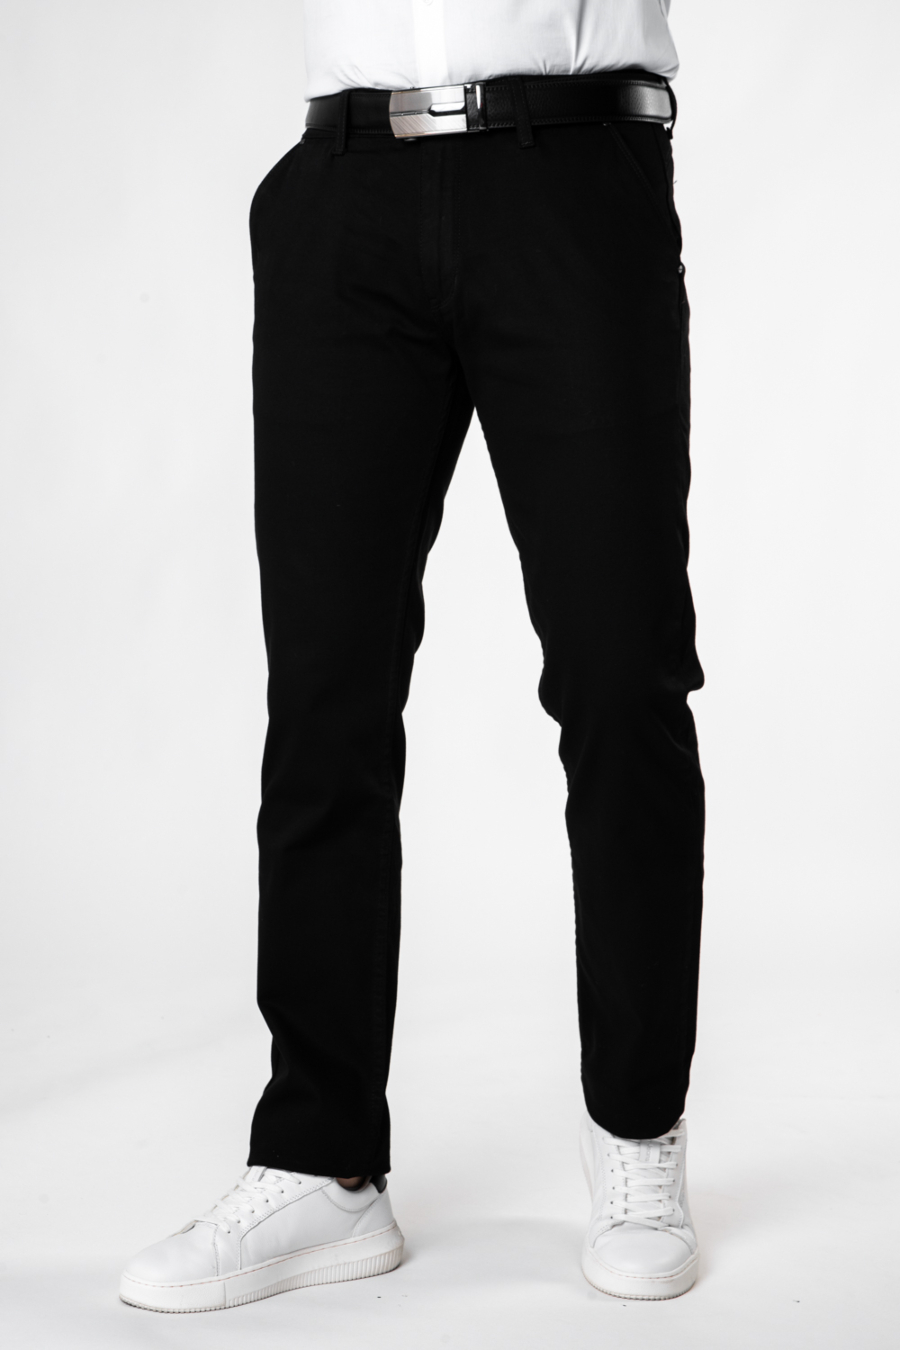 Moške hlače TODOR 11358 RD10, črne